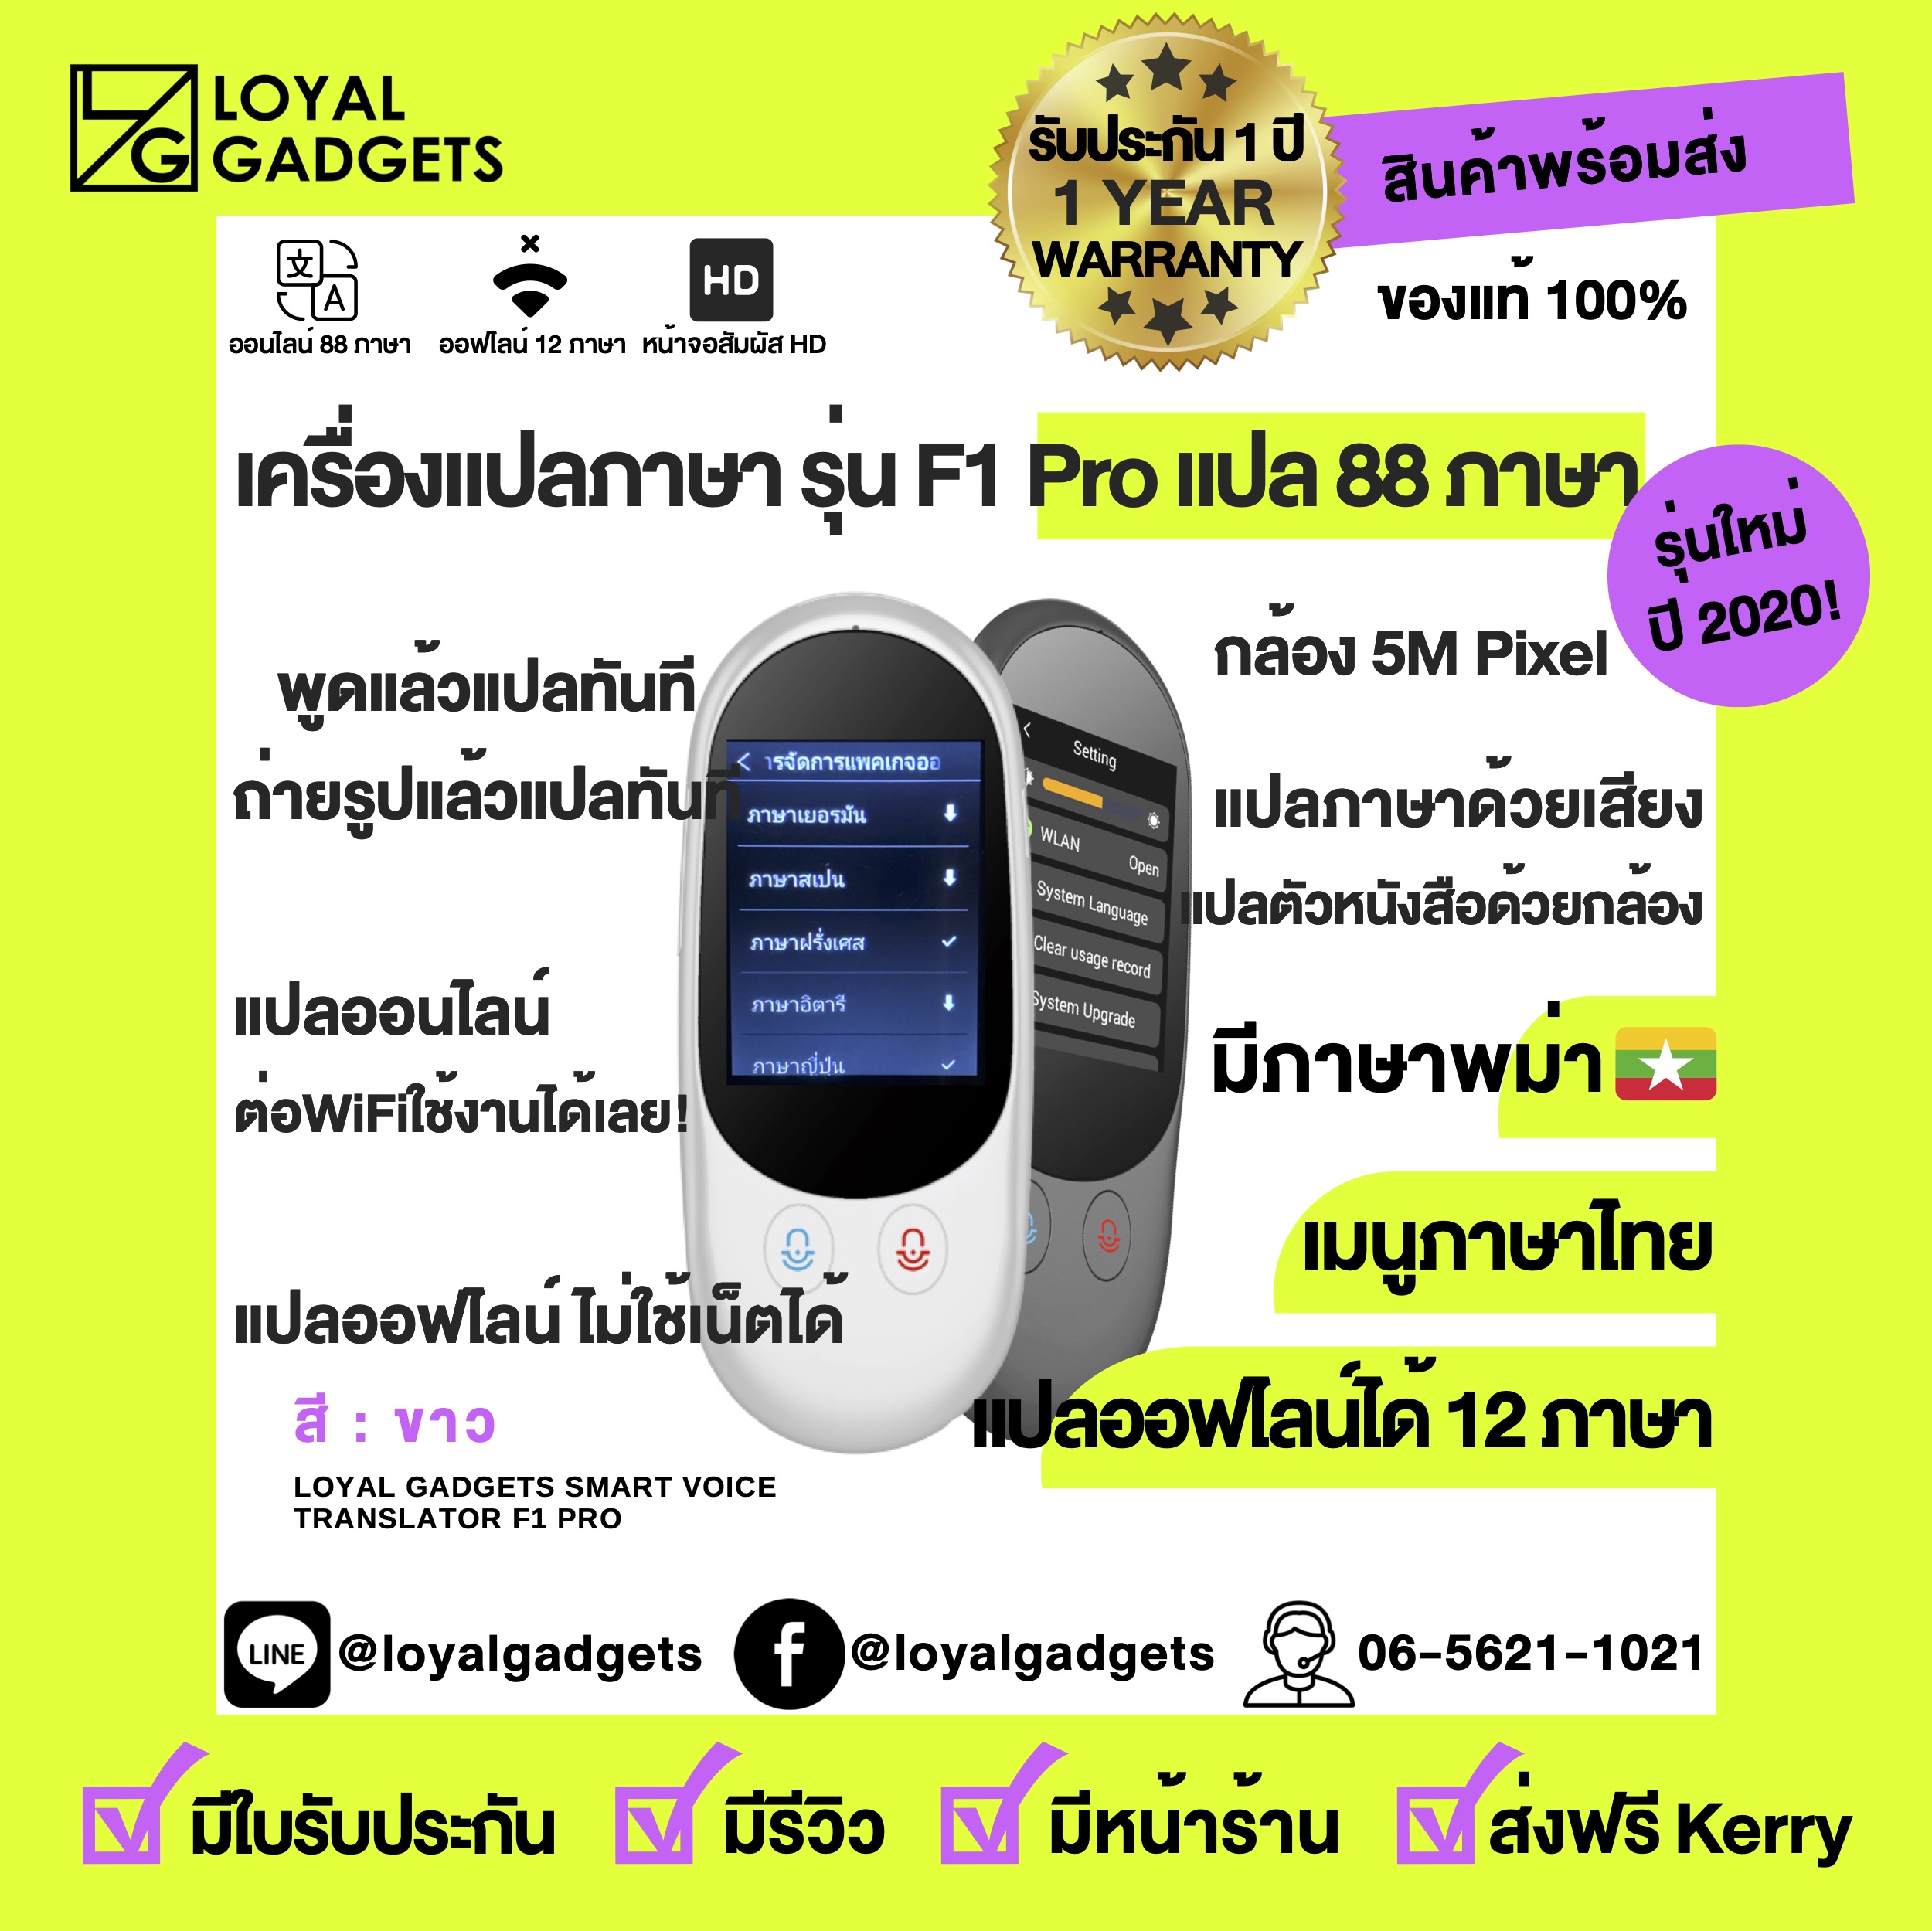 เครื่องแปลภาษา  F1 Pro แปล 88 ภาษา มีพม่า ออฟไลน์ได้ 12 ภาษา พูดภาษาไทยแล้วแปลเป็นภาษาอื่นได้ทันที ถ่ายรูปได้ 44 ภาษา